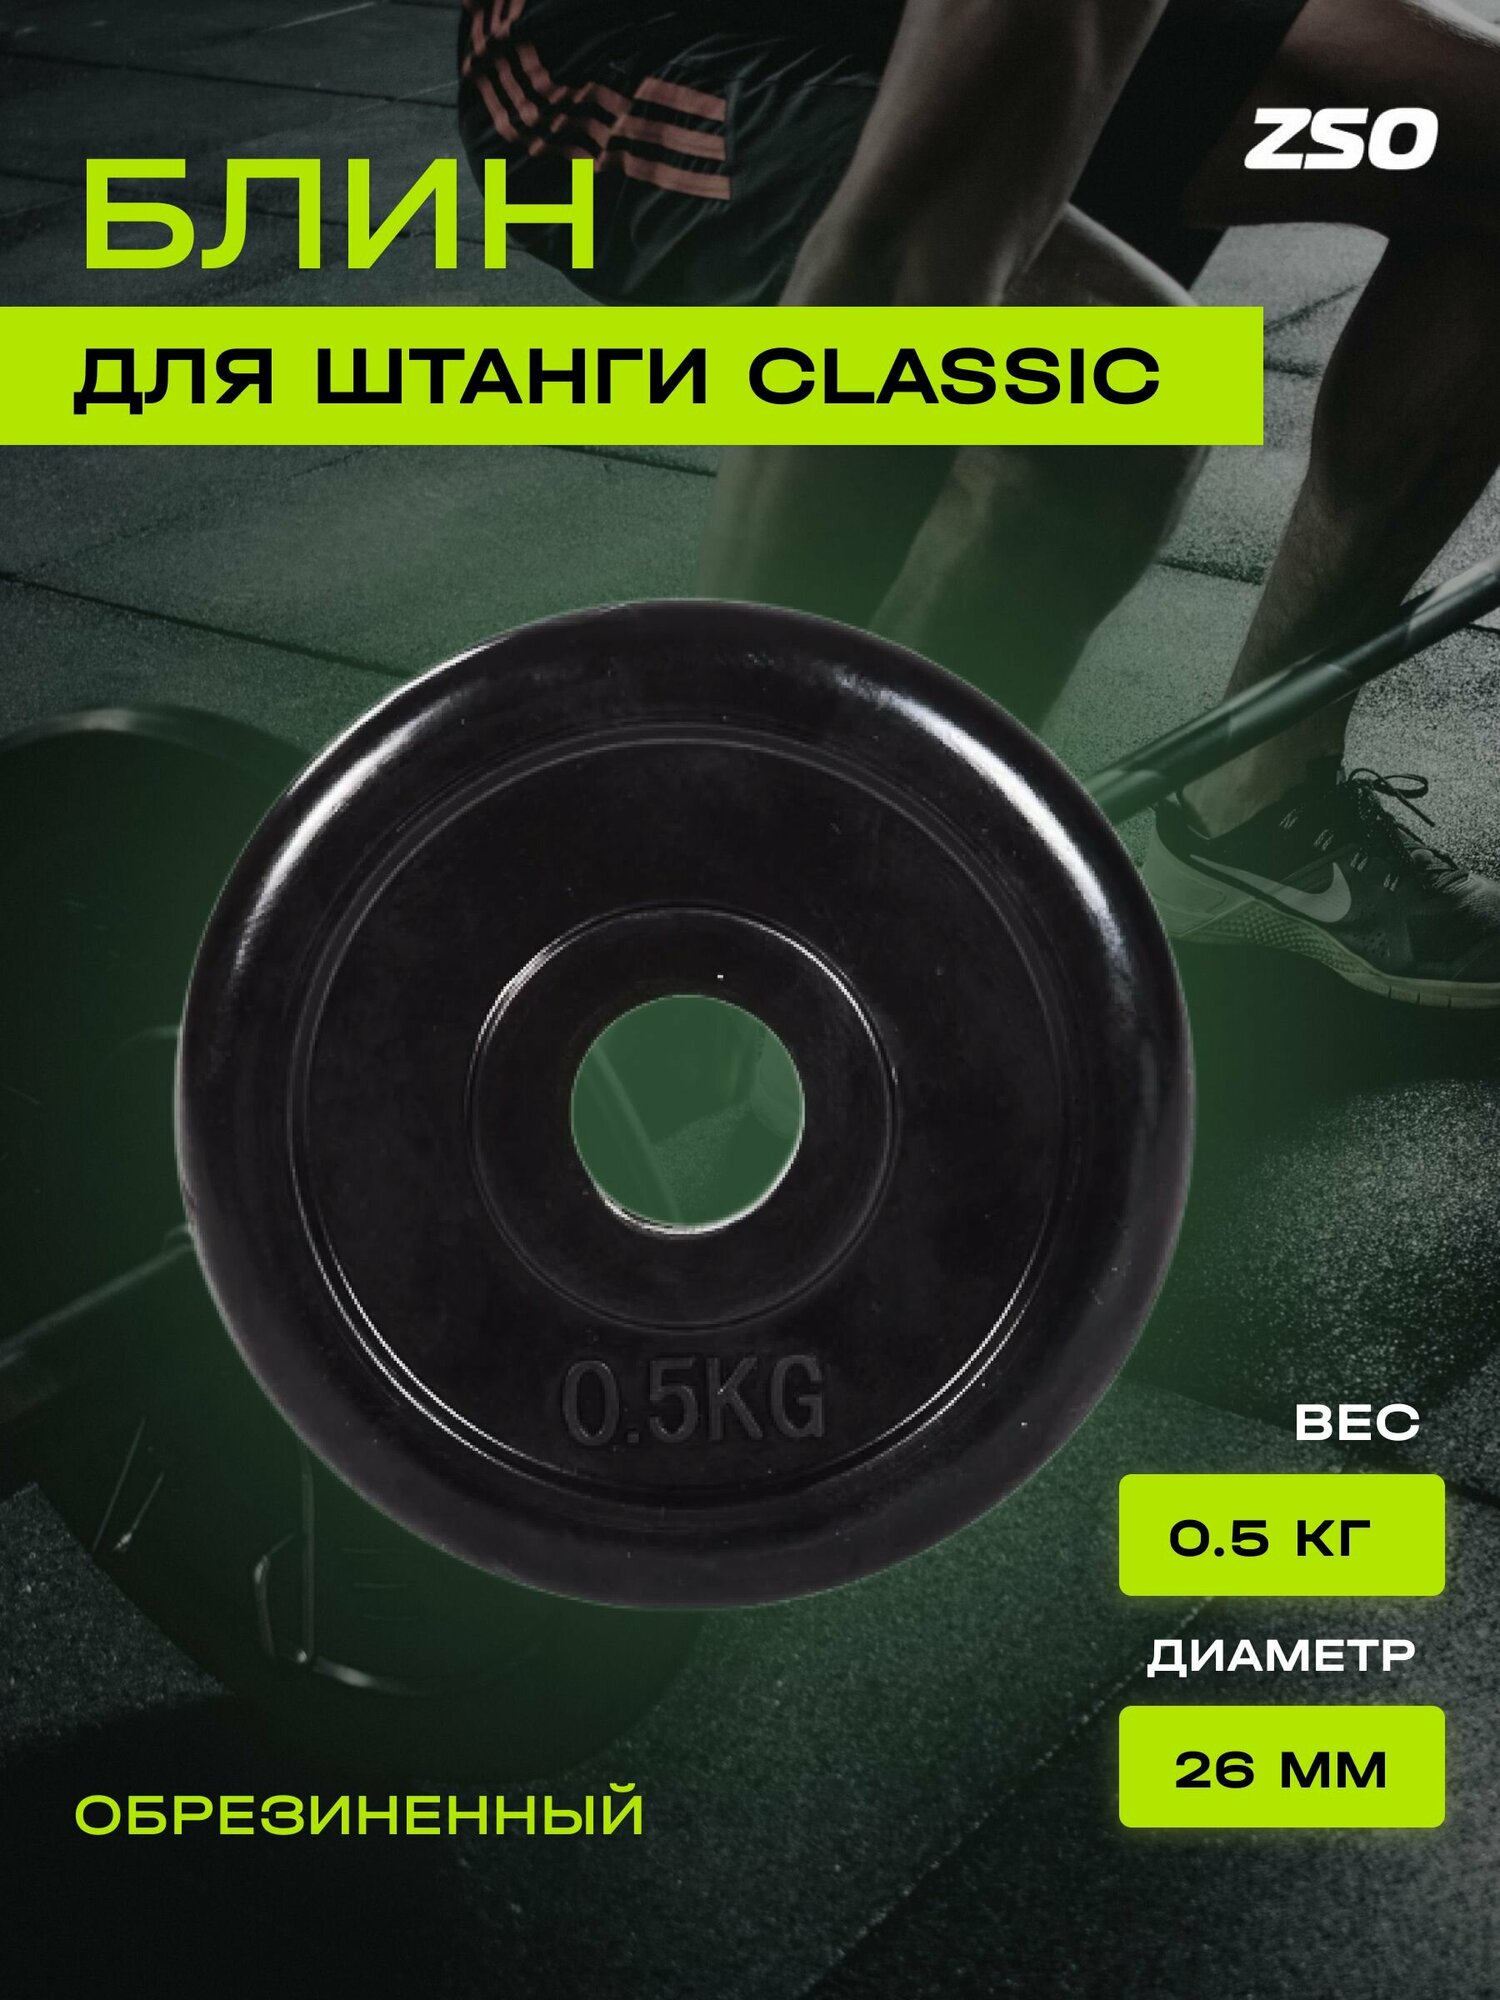 Диск (блин) для штанги и гантелей, обрезиненный ZSO черный Classic D-26, 0.5 кг